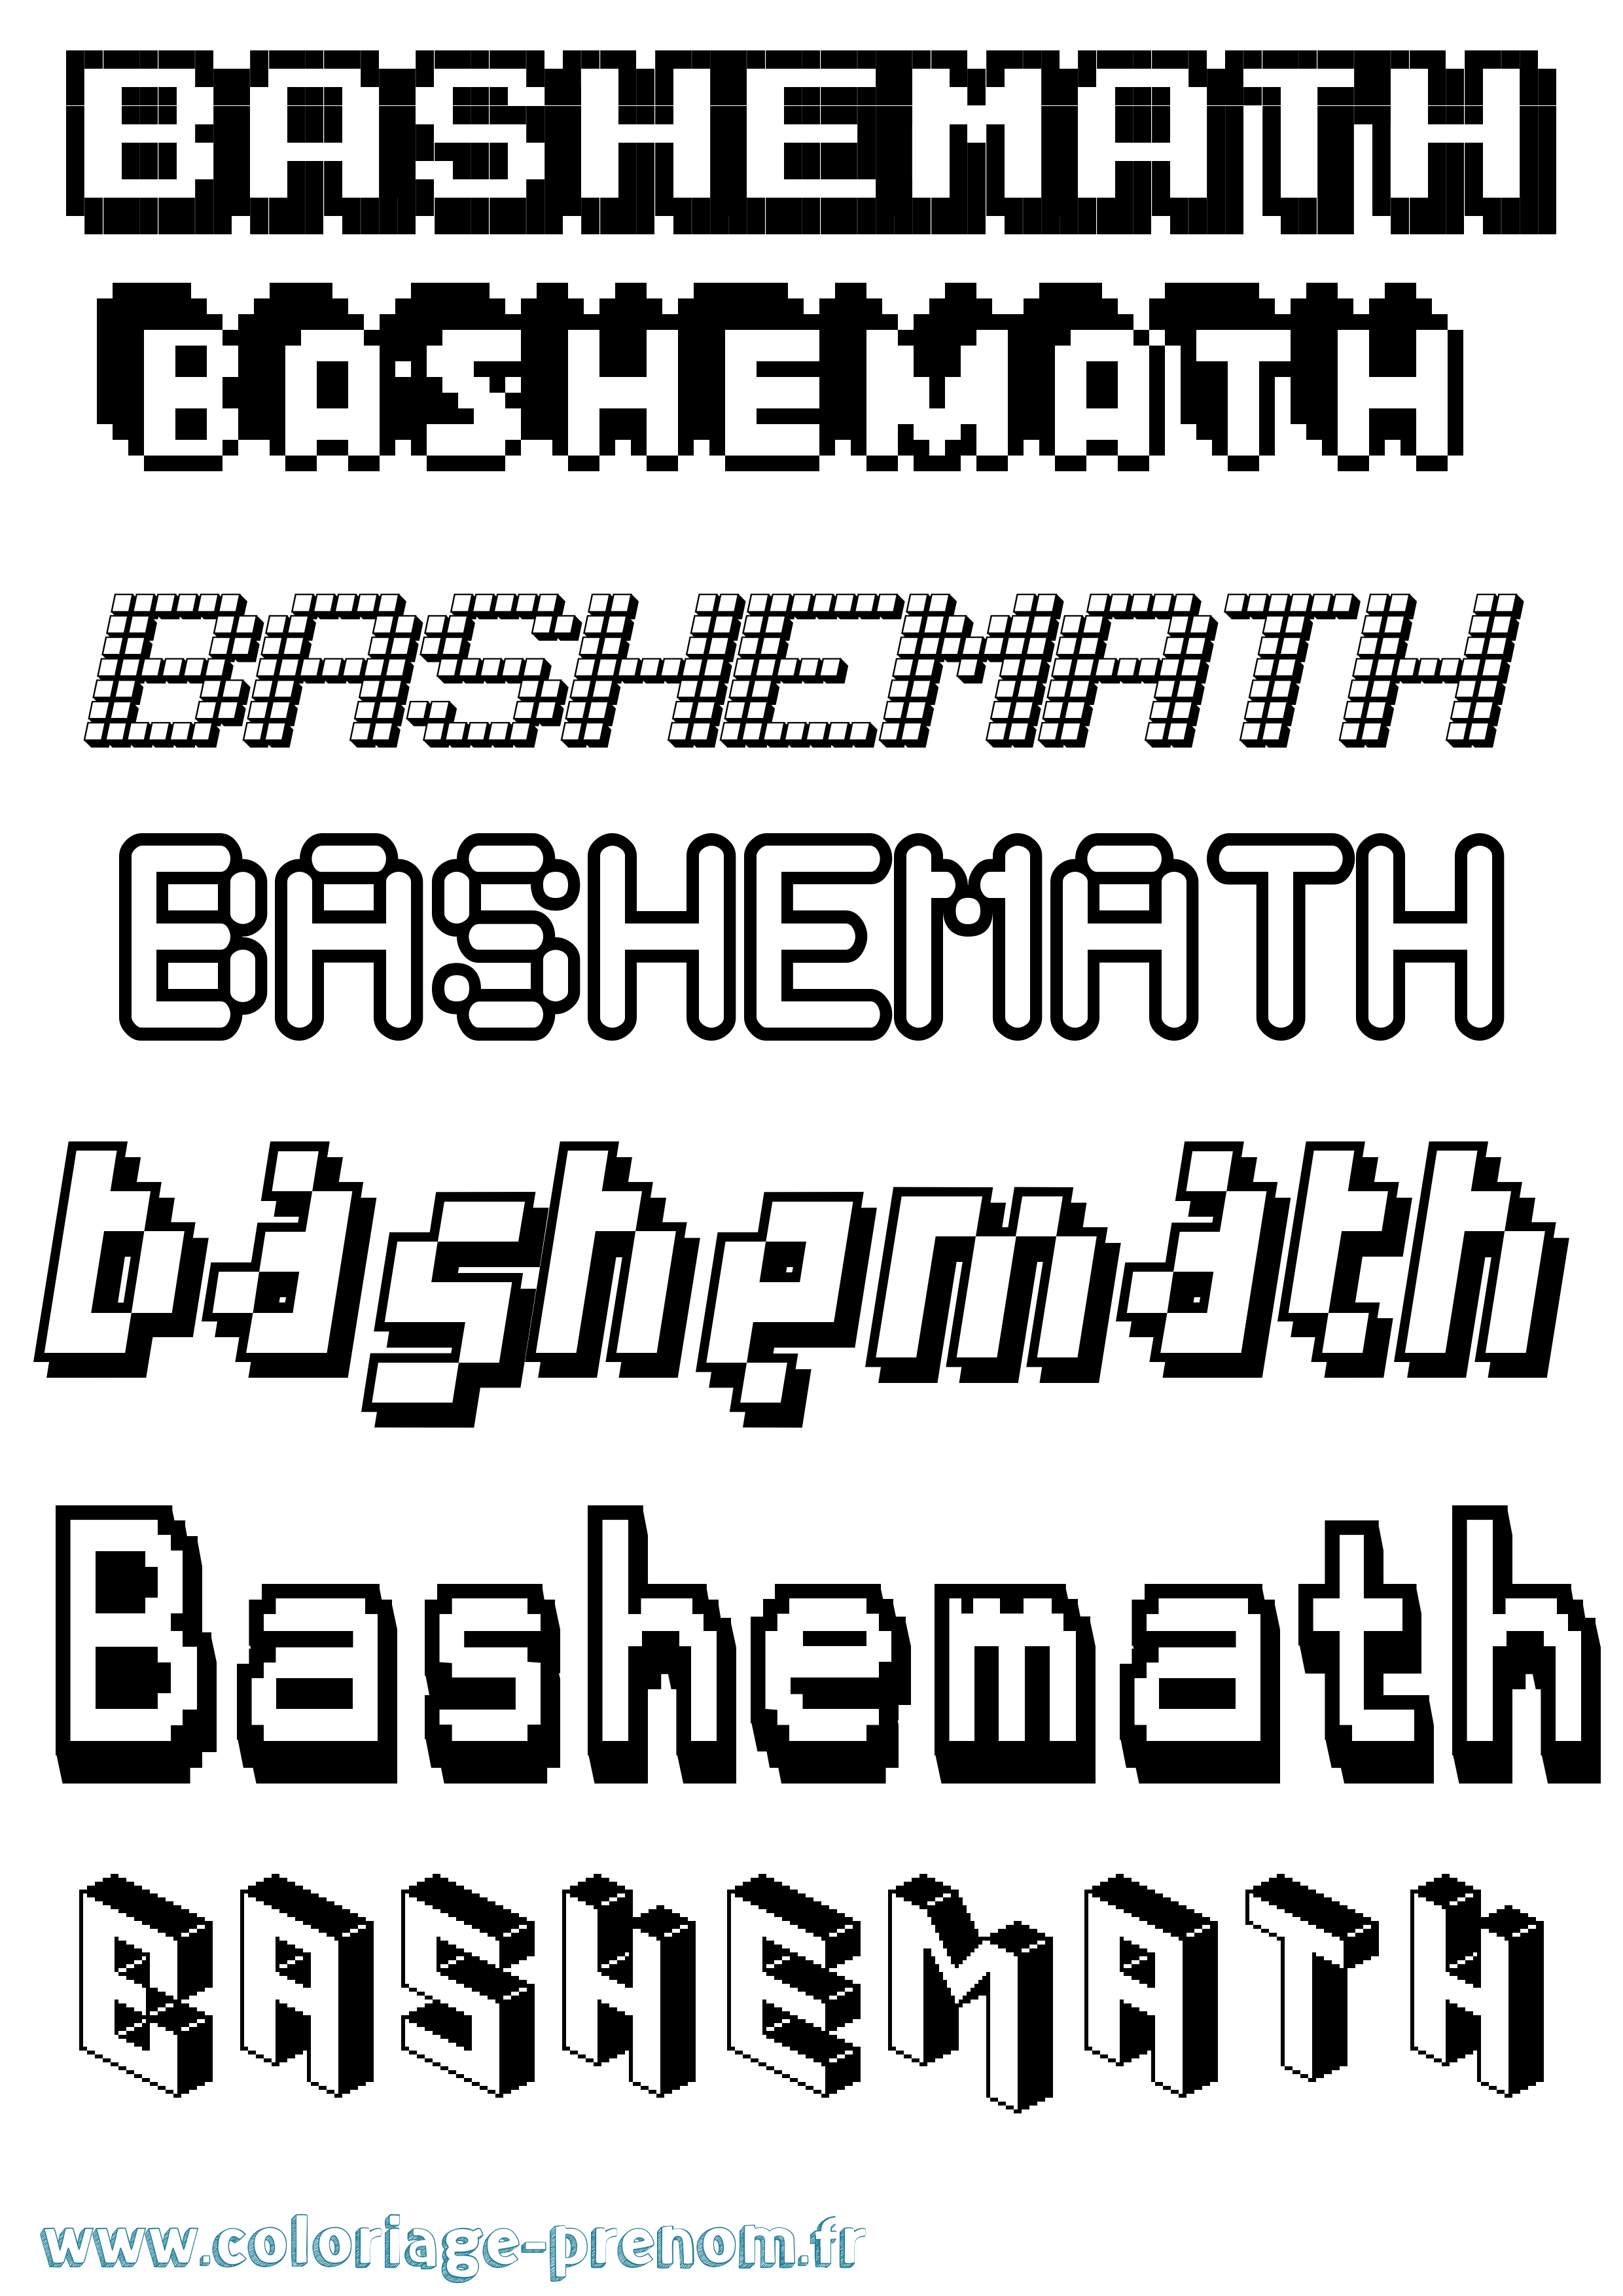 Coloriage prénom Bashemath Pixel